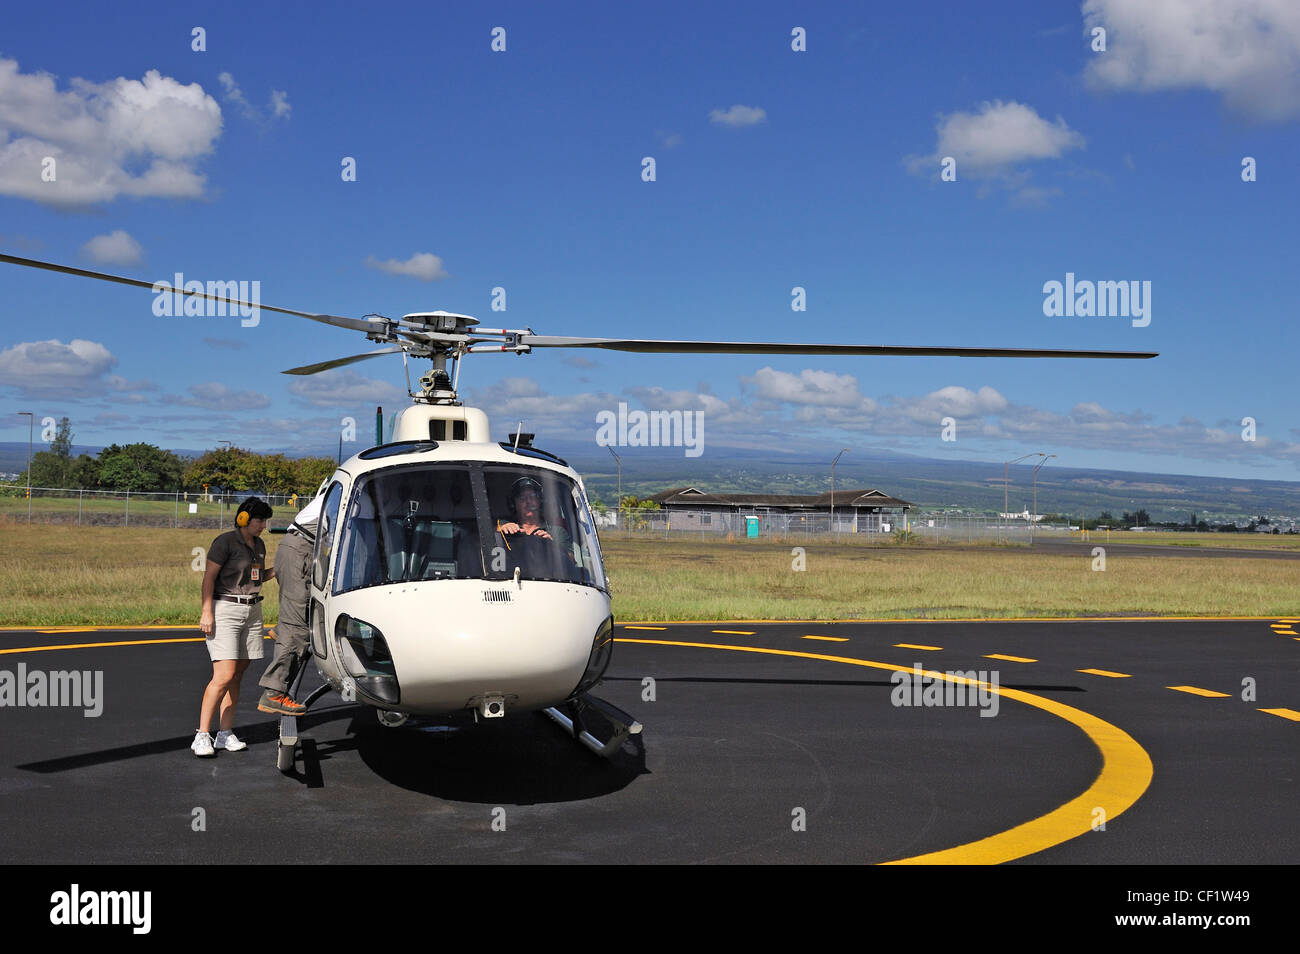 Helicóptero sobre asfalto antes de un vuelo, Hilo, Isla Grande, las Islas de Hawaii, EE.UU. Foto de stock